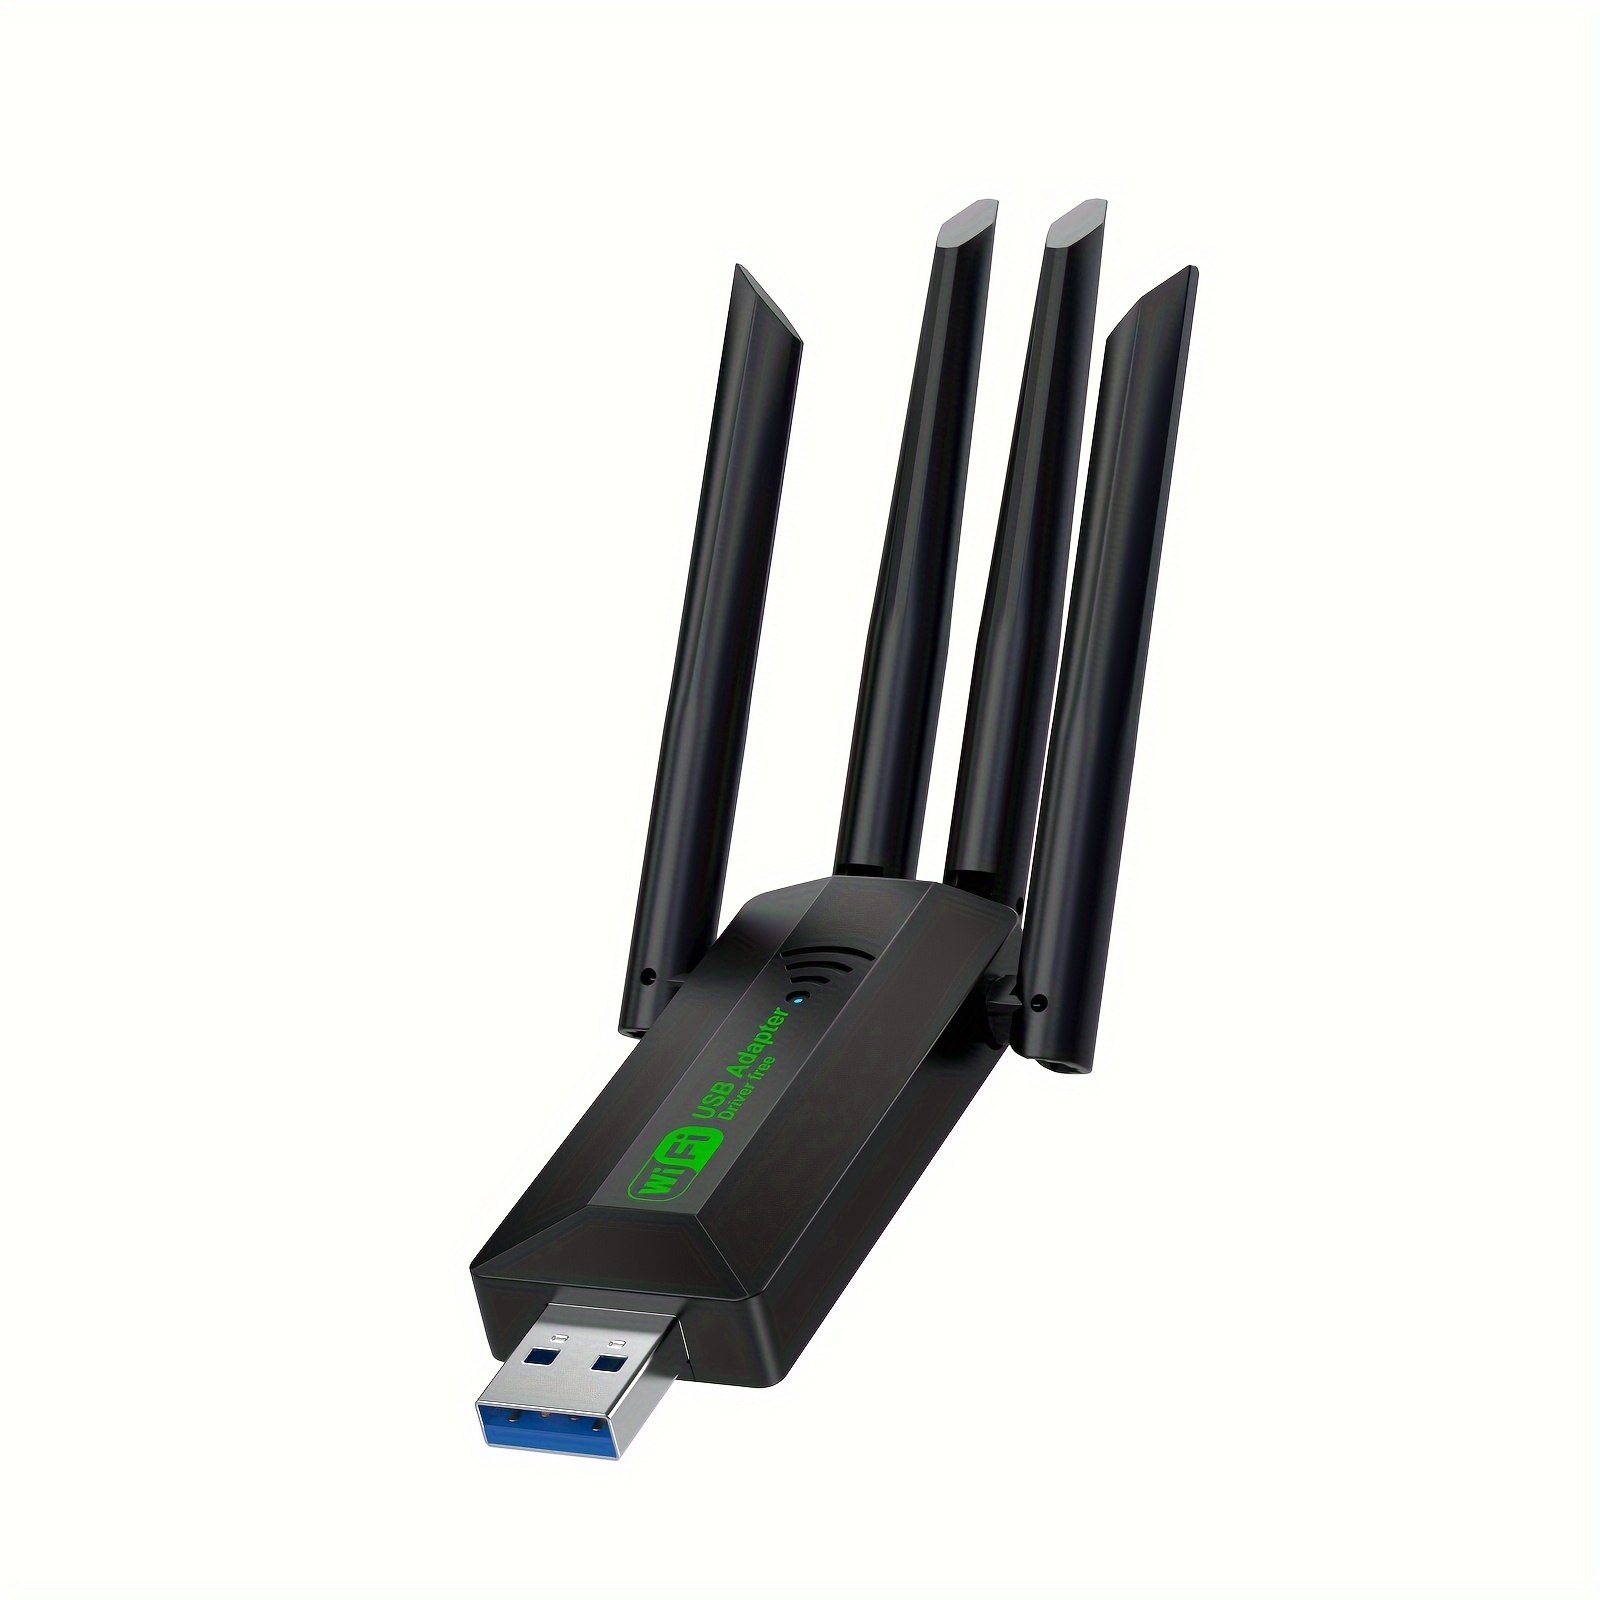 Clé WiFi USB - MT7601 150Mbps Antenne WiFi, USB2.0 WiFi Dongle